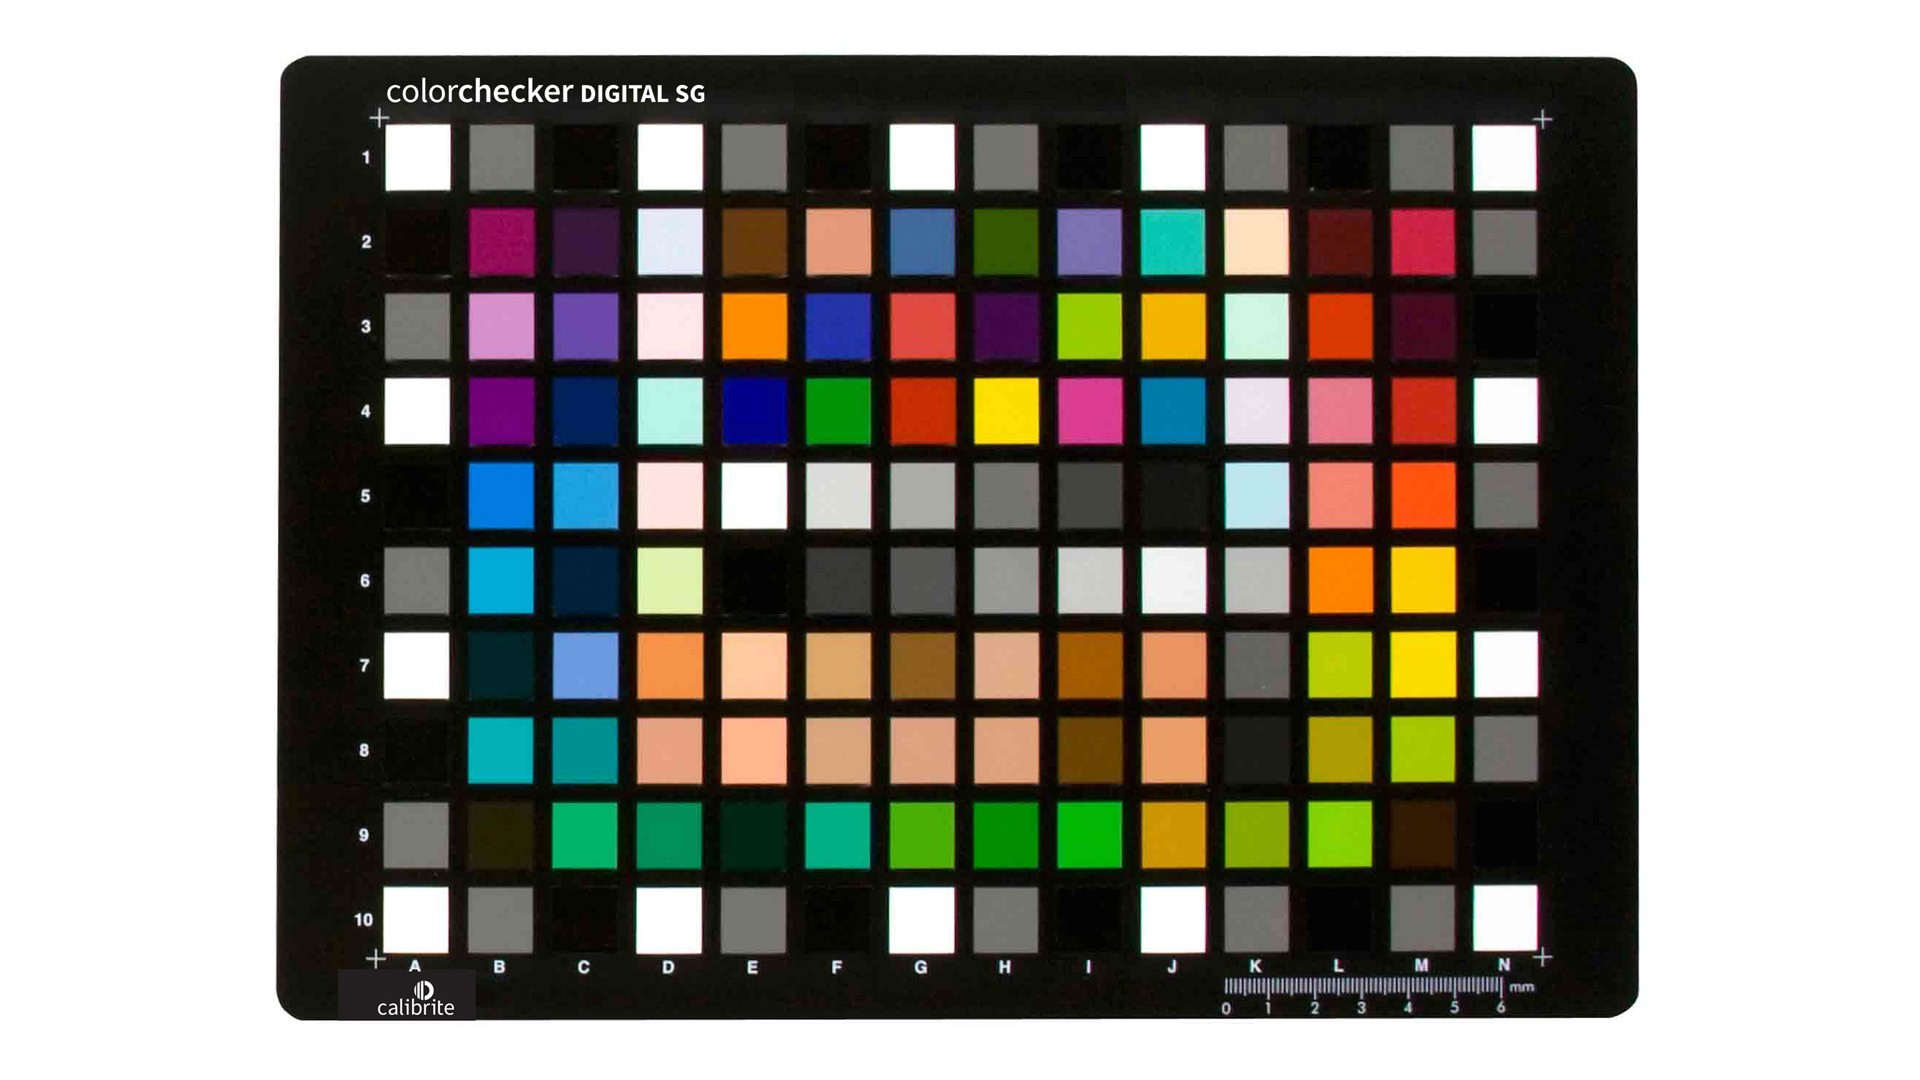 Calibrarea culorii / Profilare - Calibrite ColorChecker Digital SG, transilvae.ro